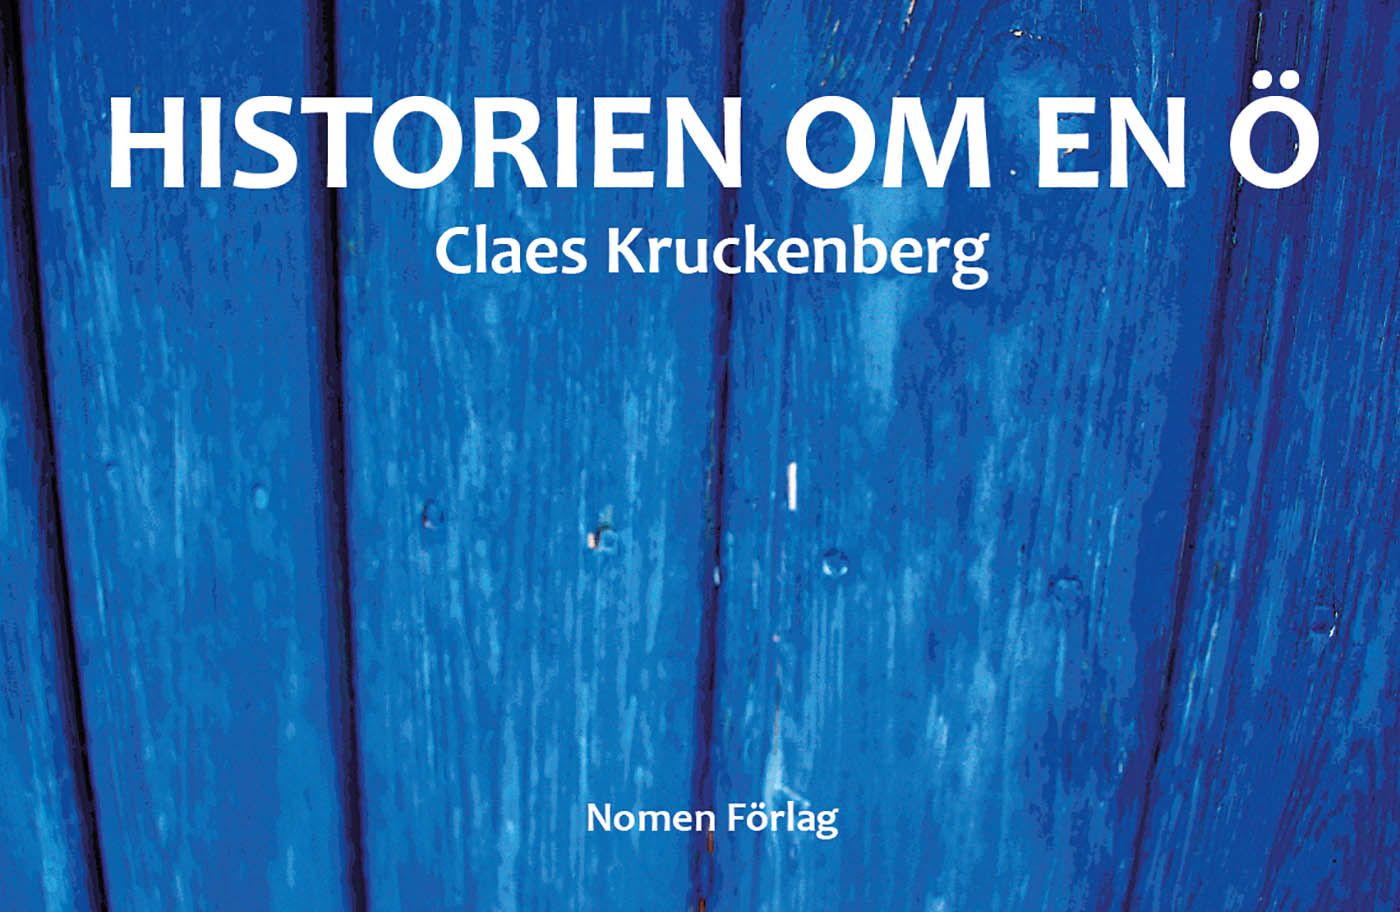 Historien om en ö, eBook by Claes Kruckenberg